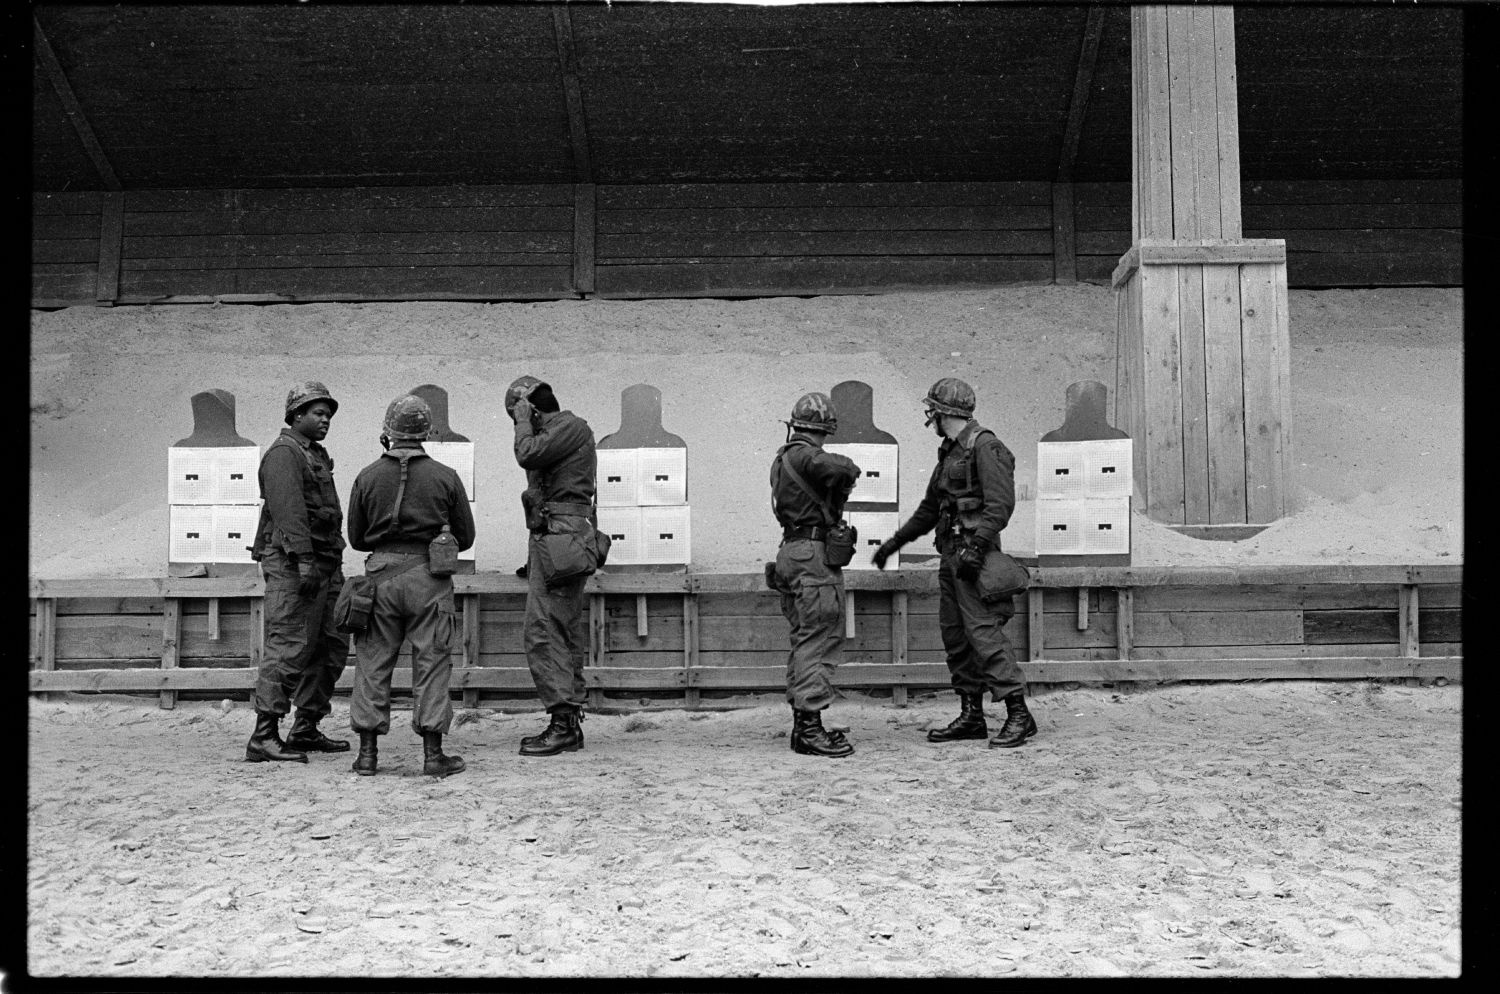 s/w-Fotografie: Schießplatz Keerans Range der U.S. Army Berlin Brigade in Berlin-Zehlendorf (AlliiertenMuseum/U.S. Army Photograph Public Domain Mark)